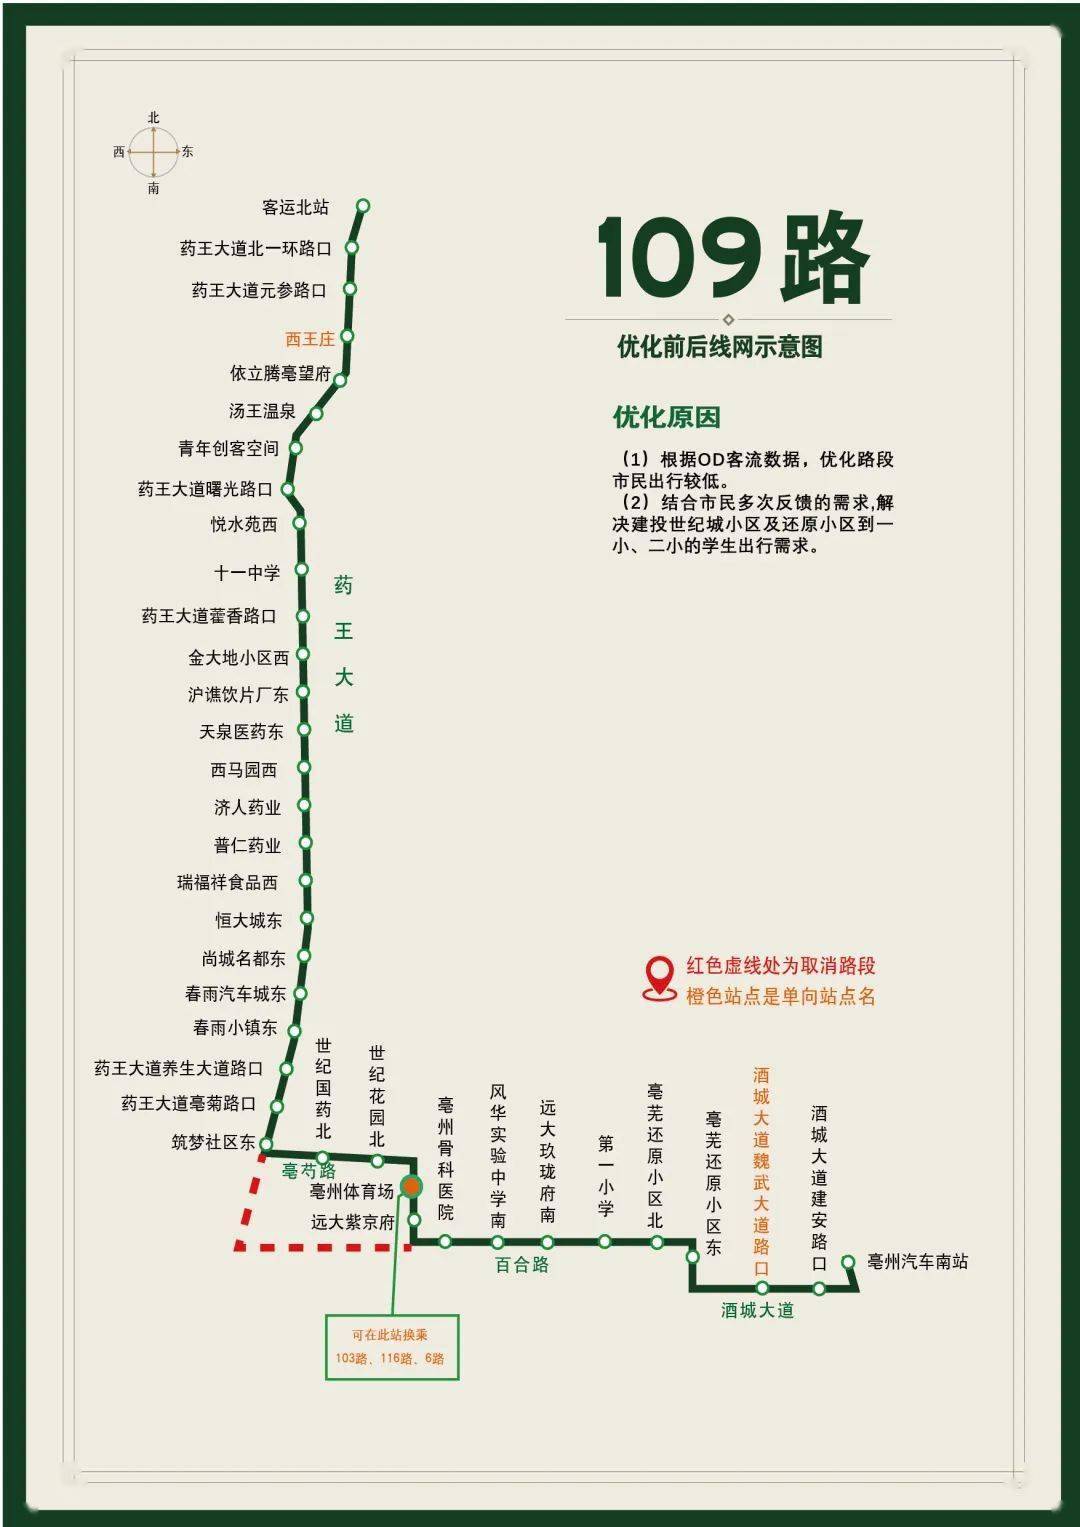 沈阳113路公交车线路图图片